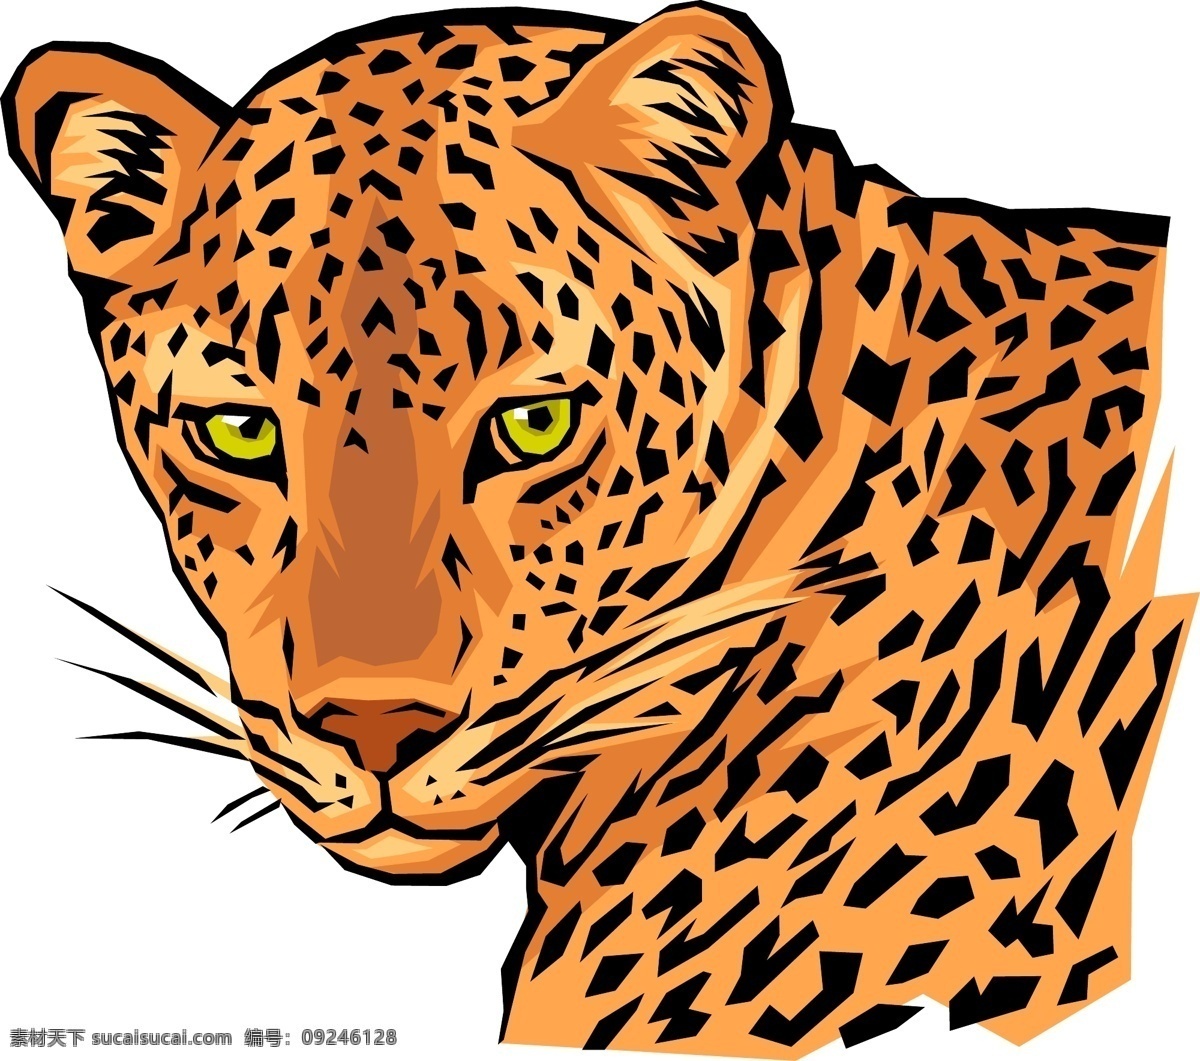 猎豹 矢量图 金钱豹 矢量 豹子矢量图 野生动物 保护 野生动物矢量 动物矢量图 爱护动物 矢量动物 生物世界